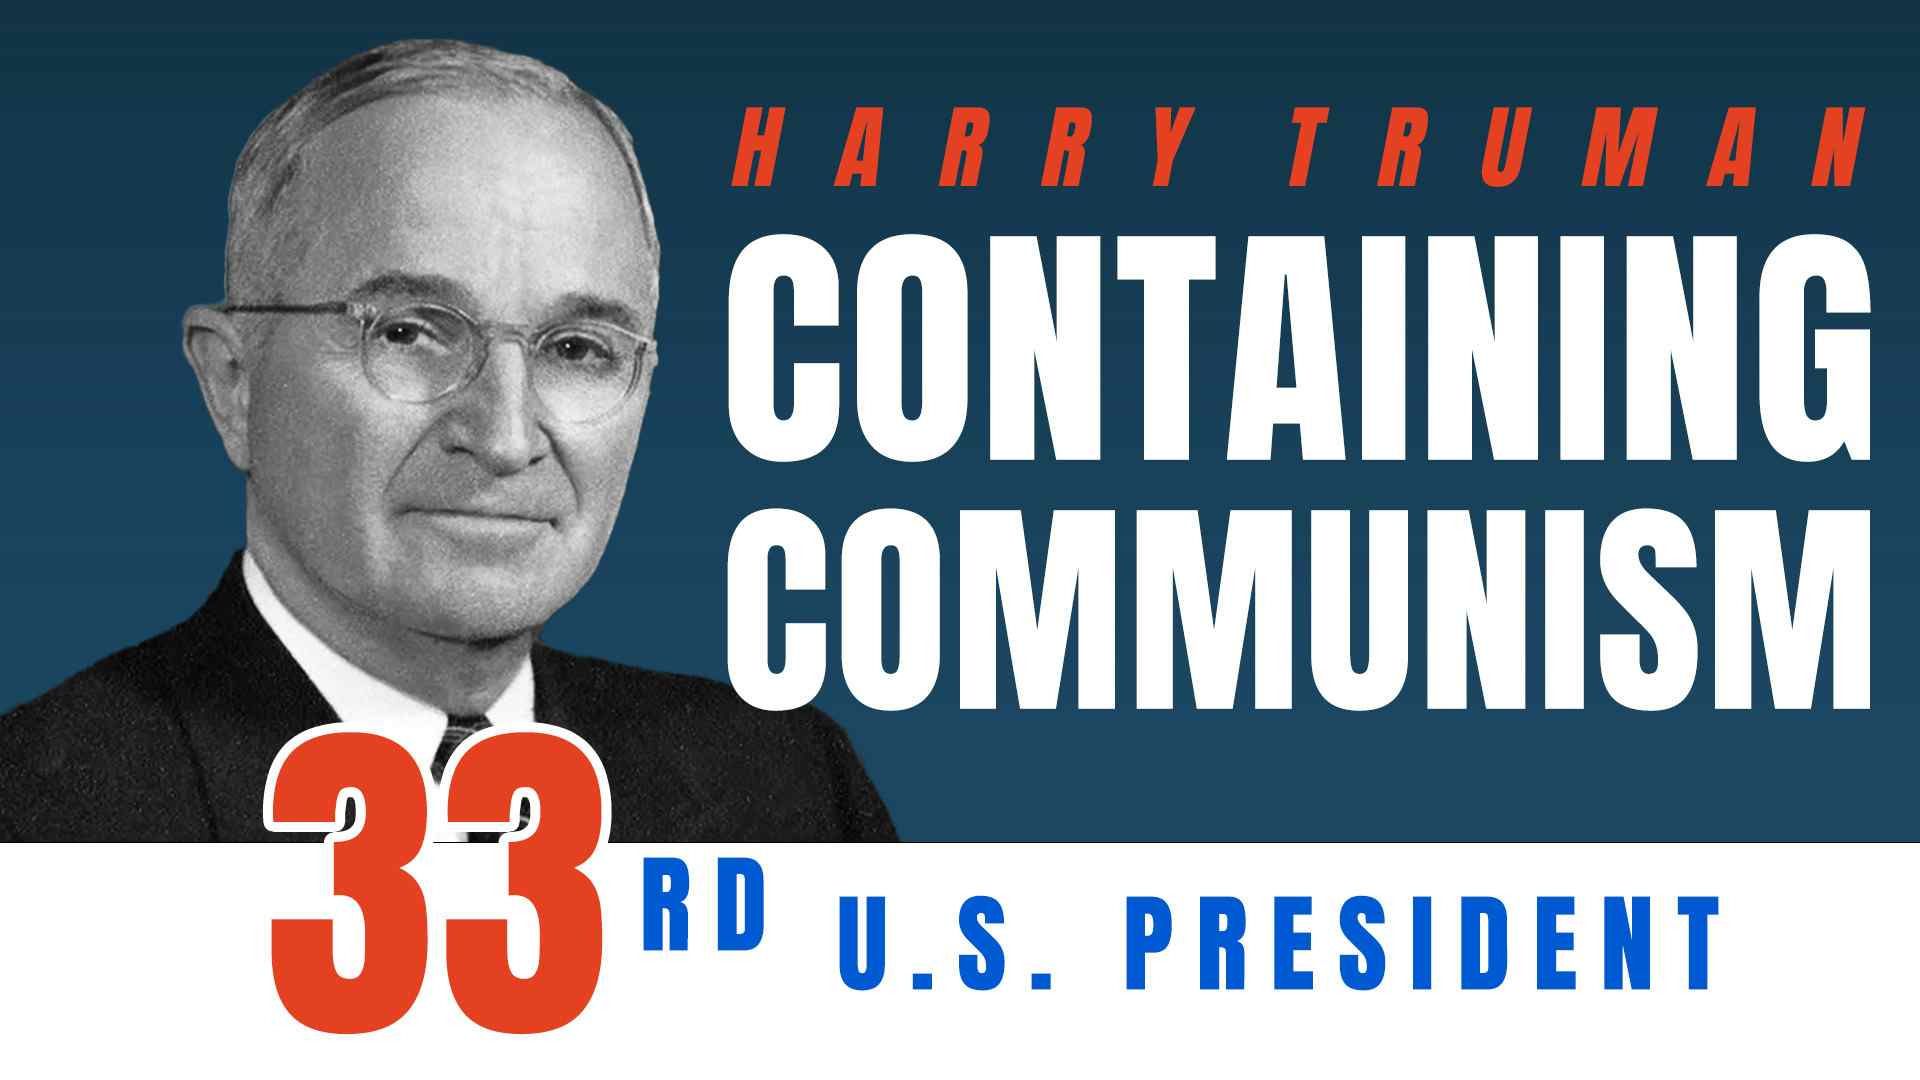 Harry Truman: Containing Communism